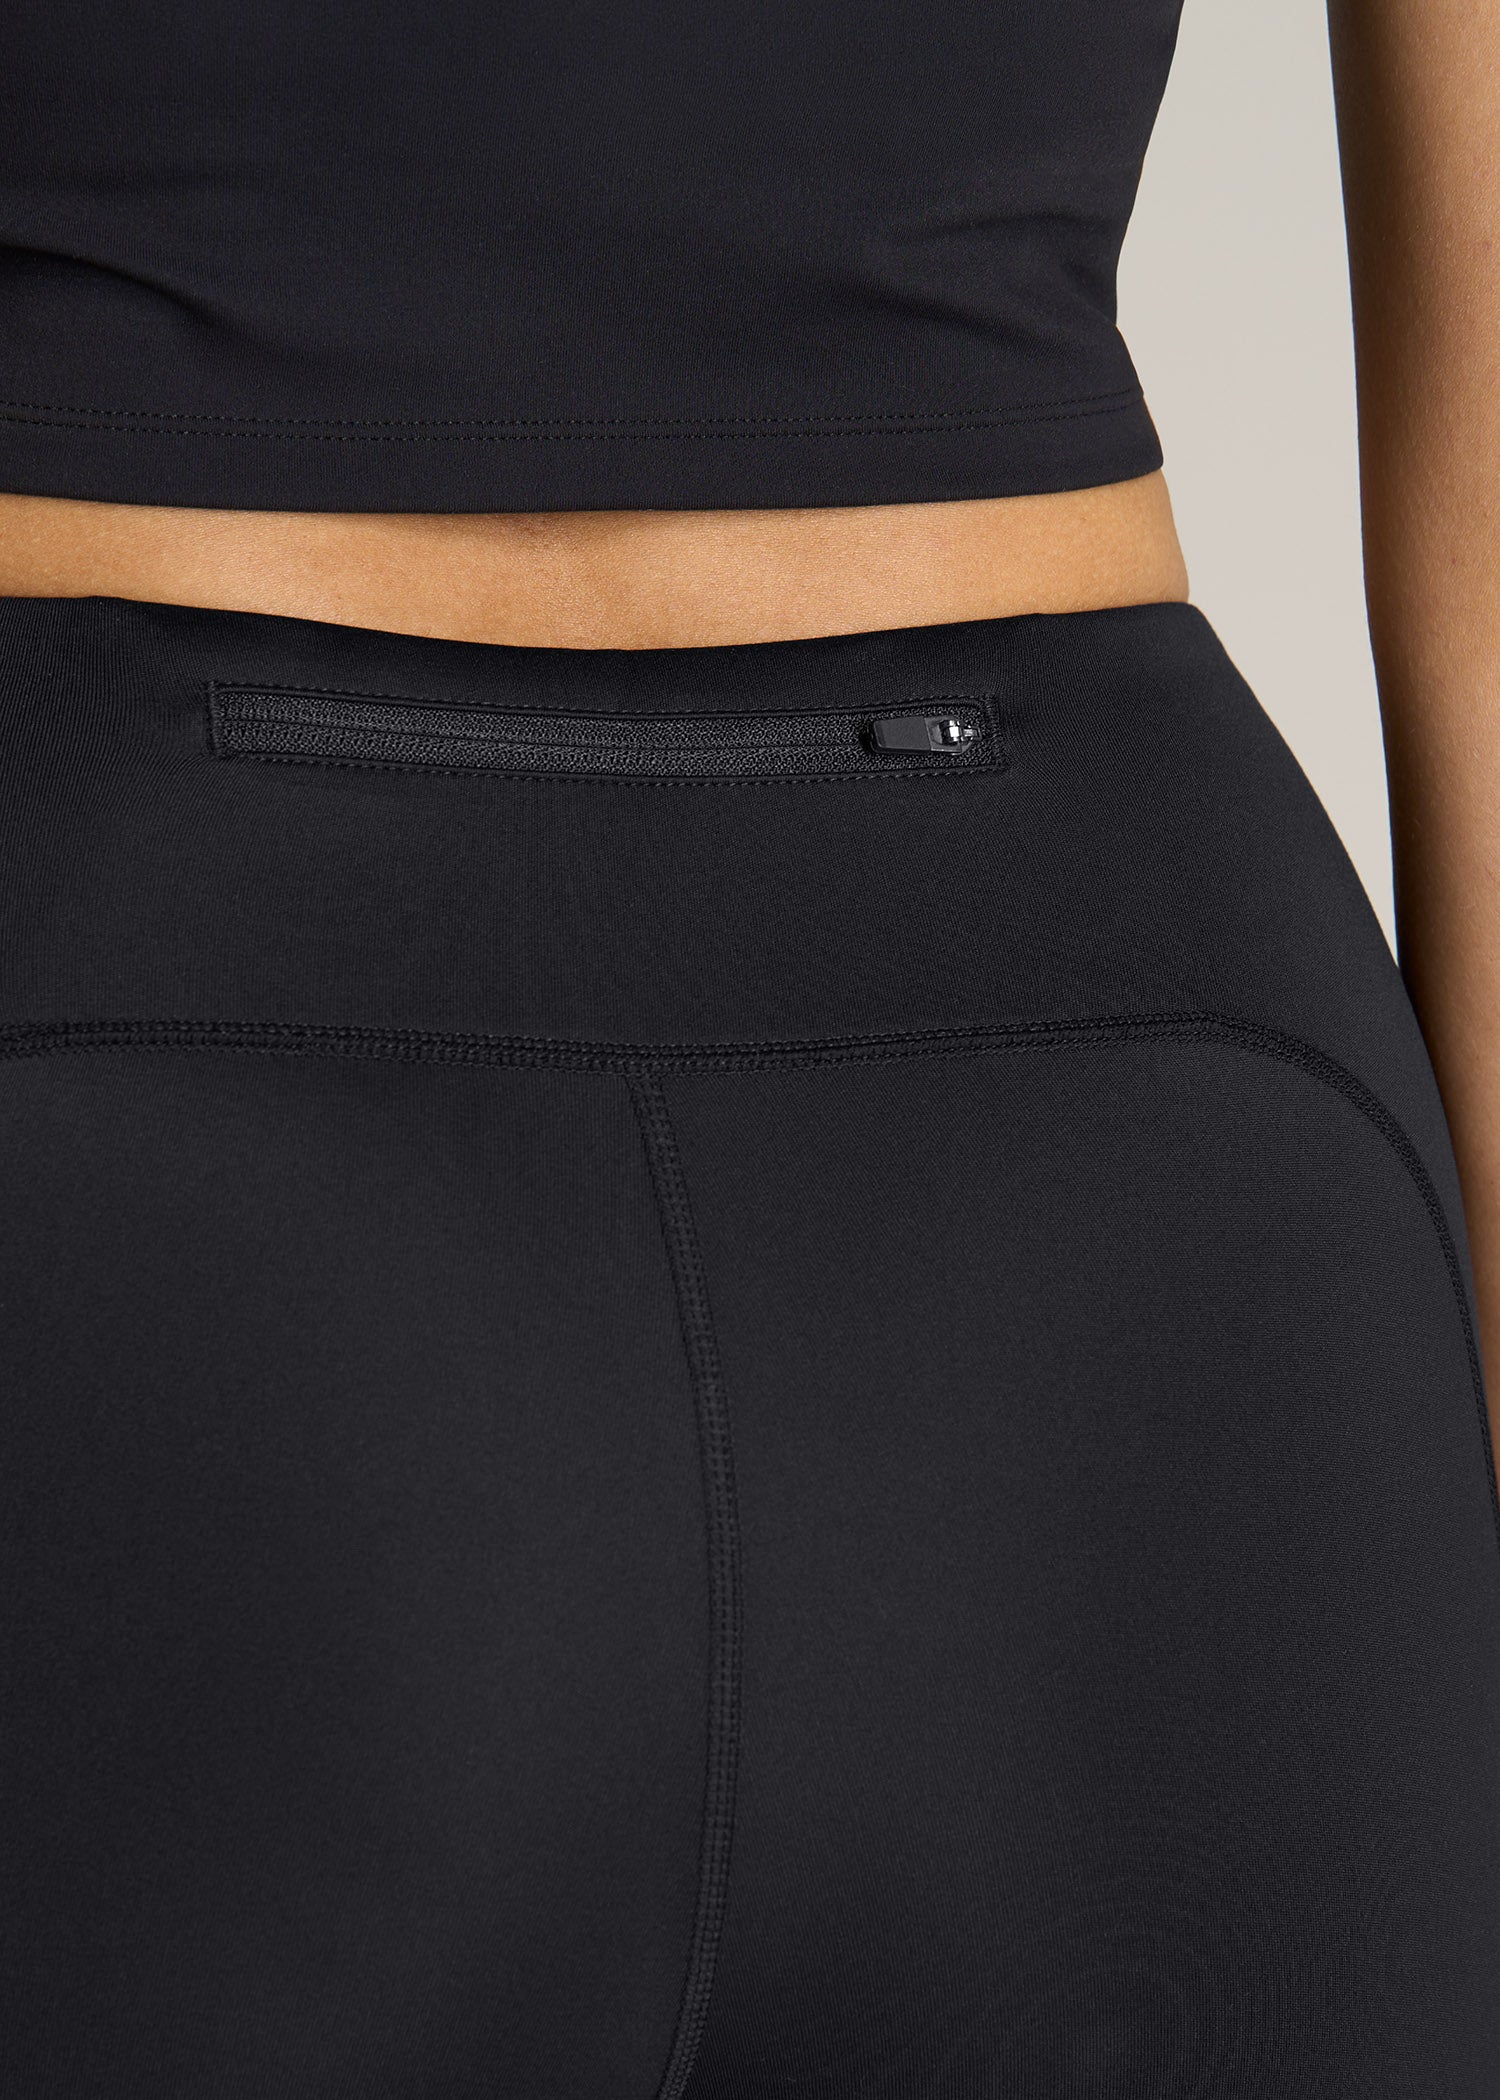 Lululemon Women's Running Capri Leggings w/ Pockets Size 6 Zipper Pocket -  Black